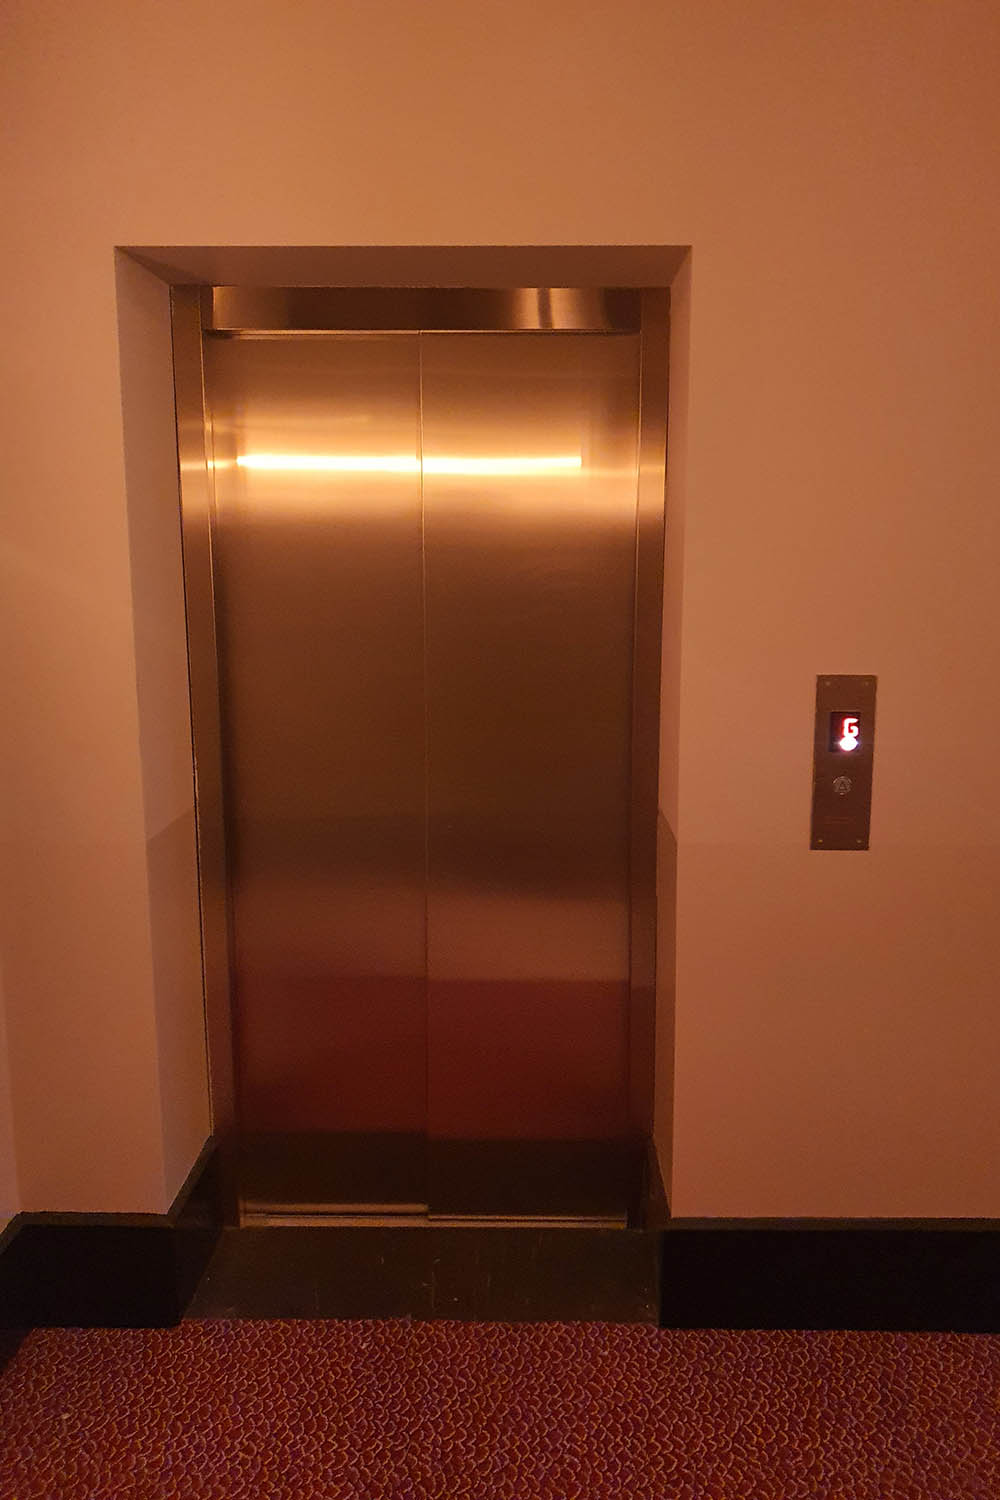 bespoke lift doors result